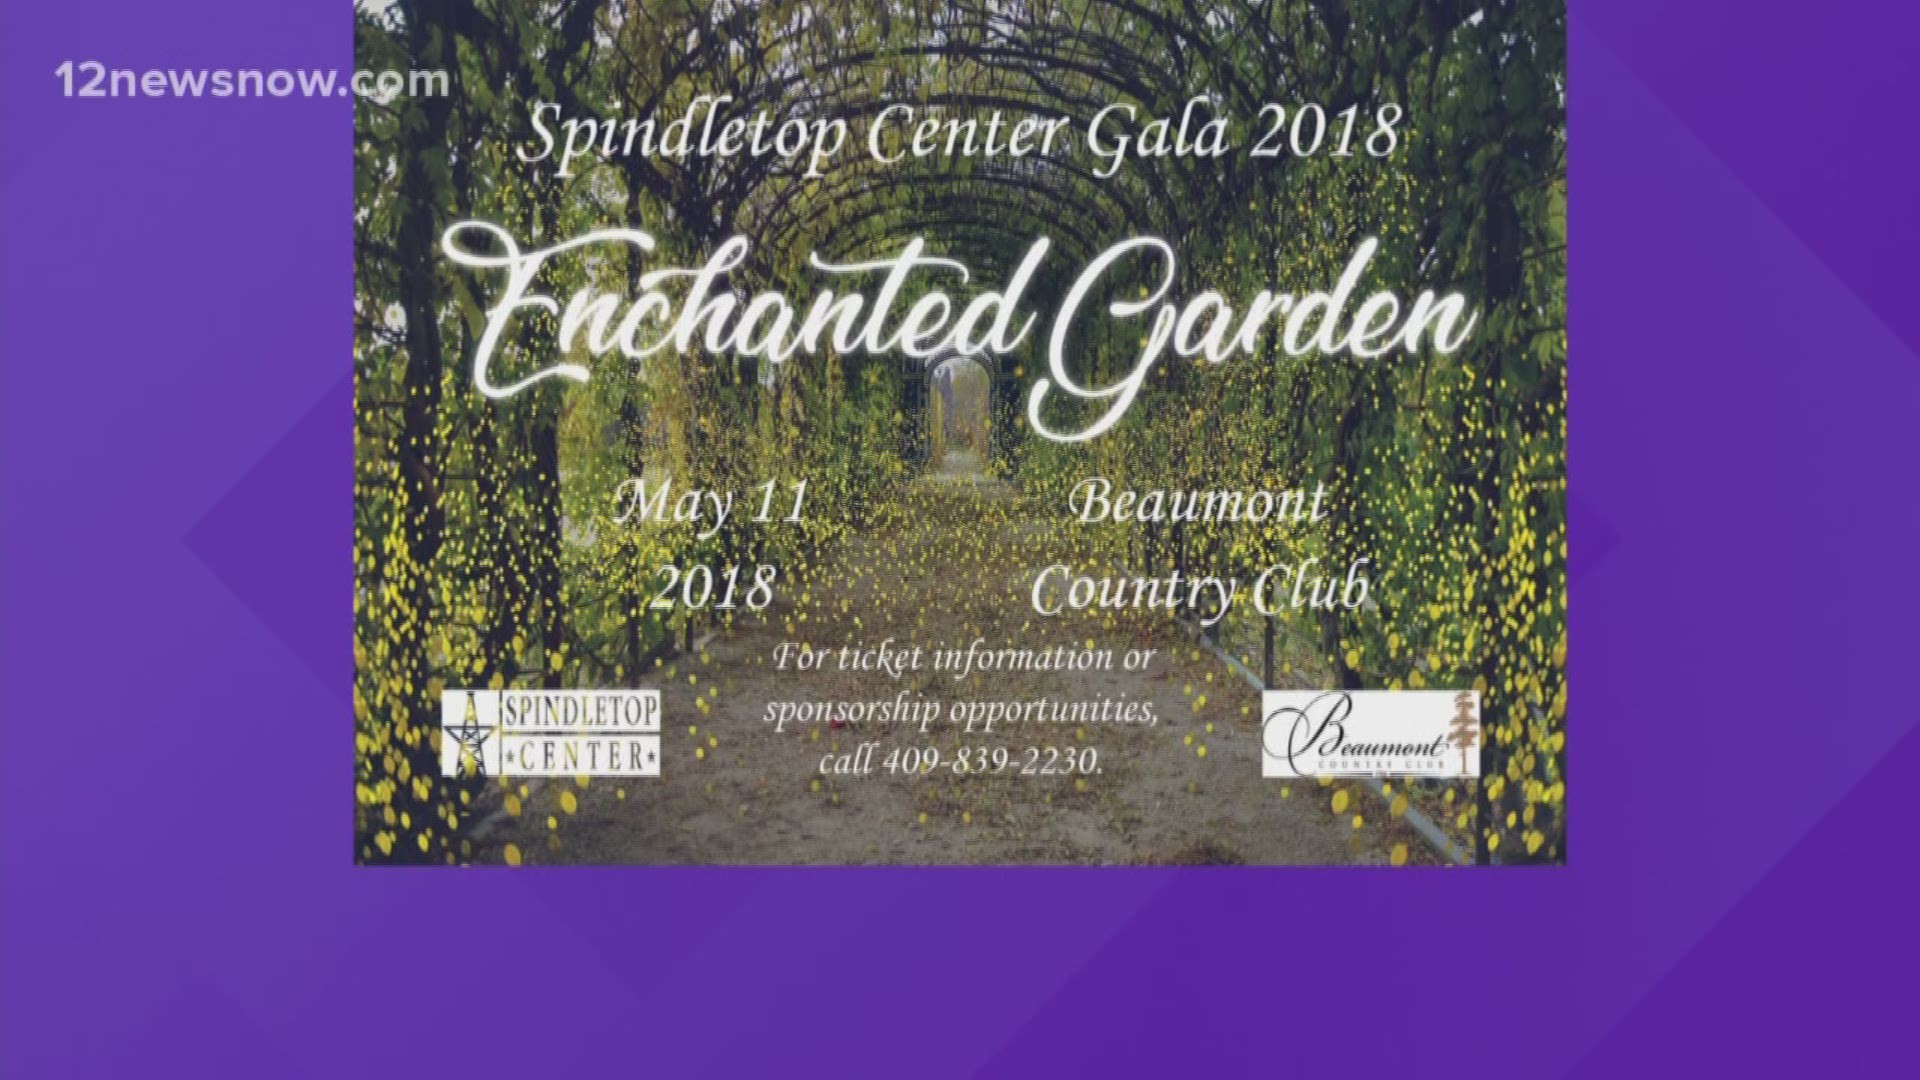 2018 Spindletop Center Gala themed Enchanted Garden.